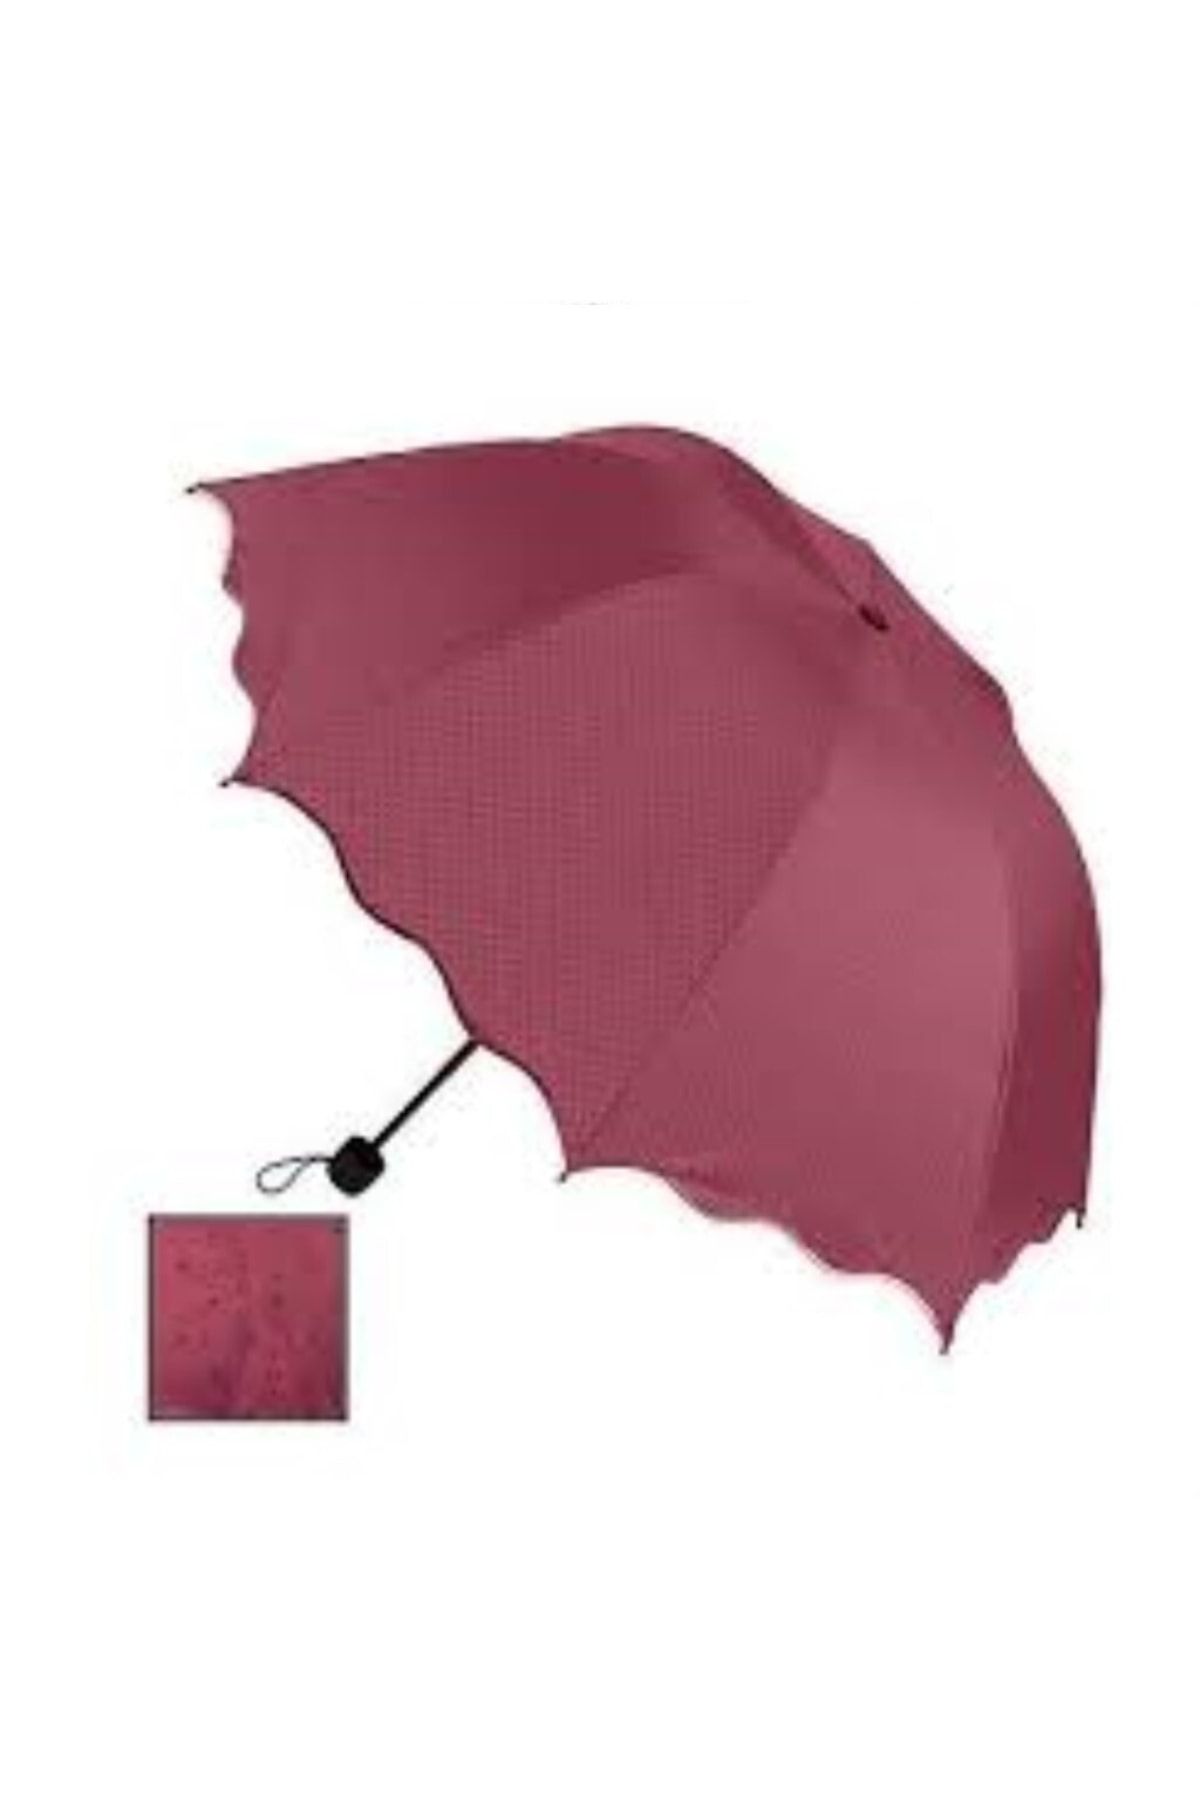 BAMTEBİ Rubenis Çanta Boy Manuel Unisex Chery Yarasa Model Benekli Yağmur Şemsiyesi Katlanır Mini Semsiye